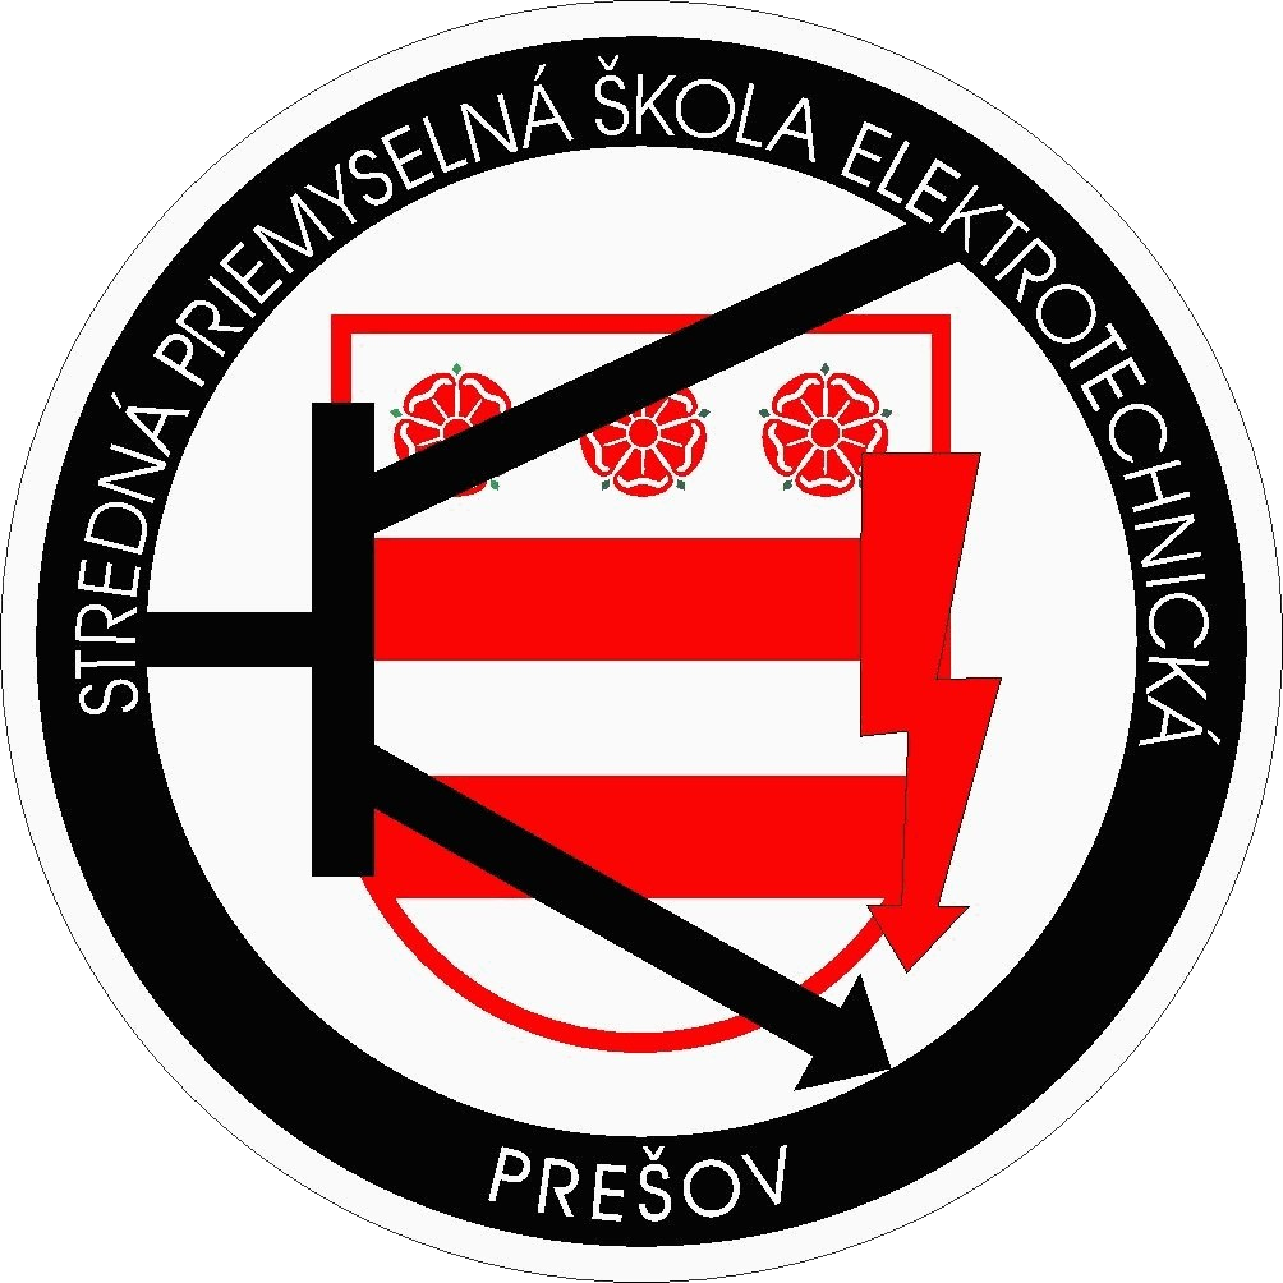 Stredna priemyselna skola elektrotechnicka Presov - Informatics